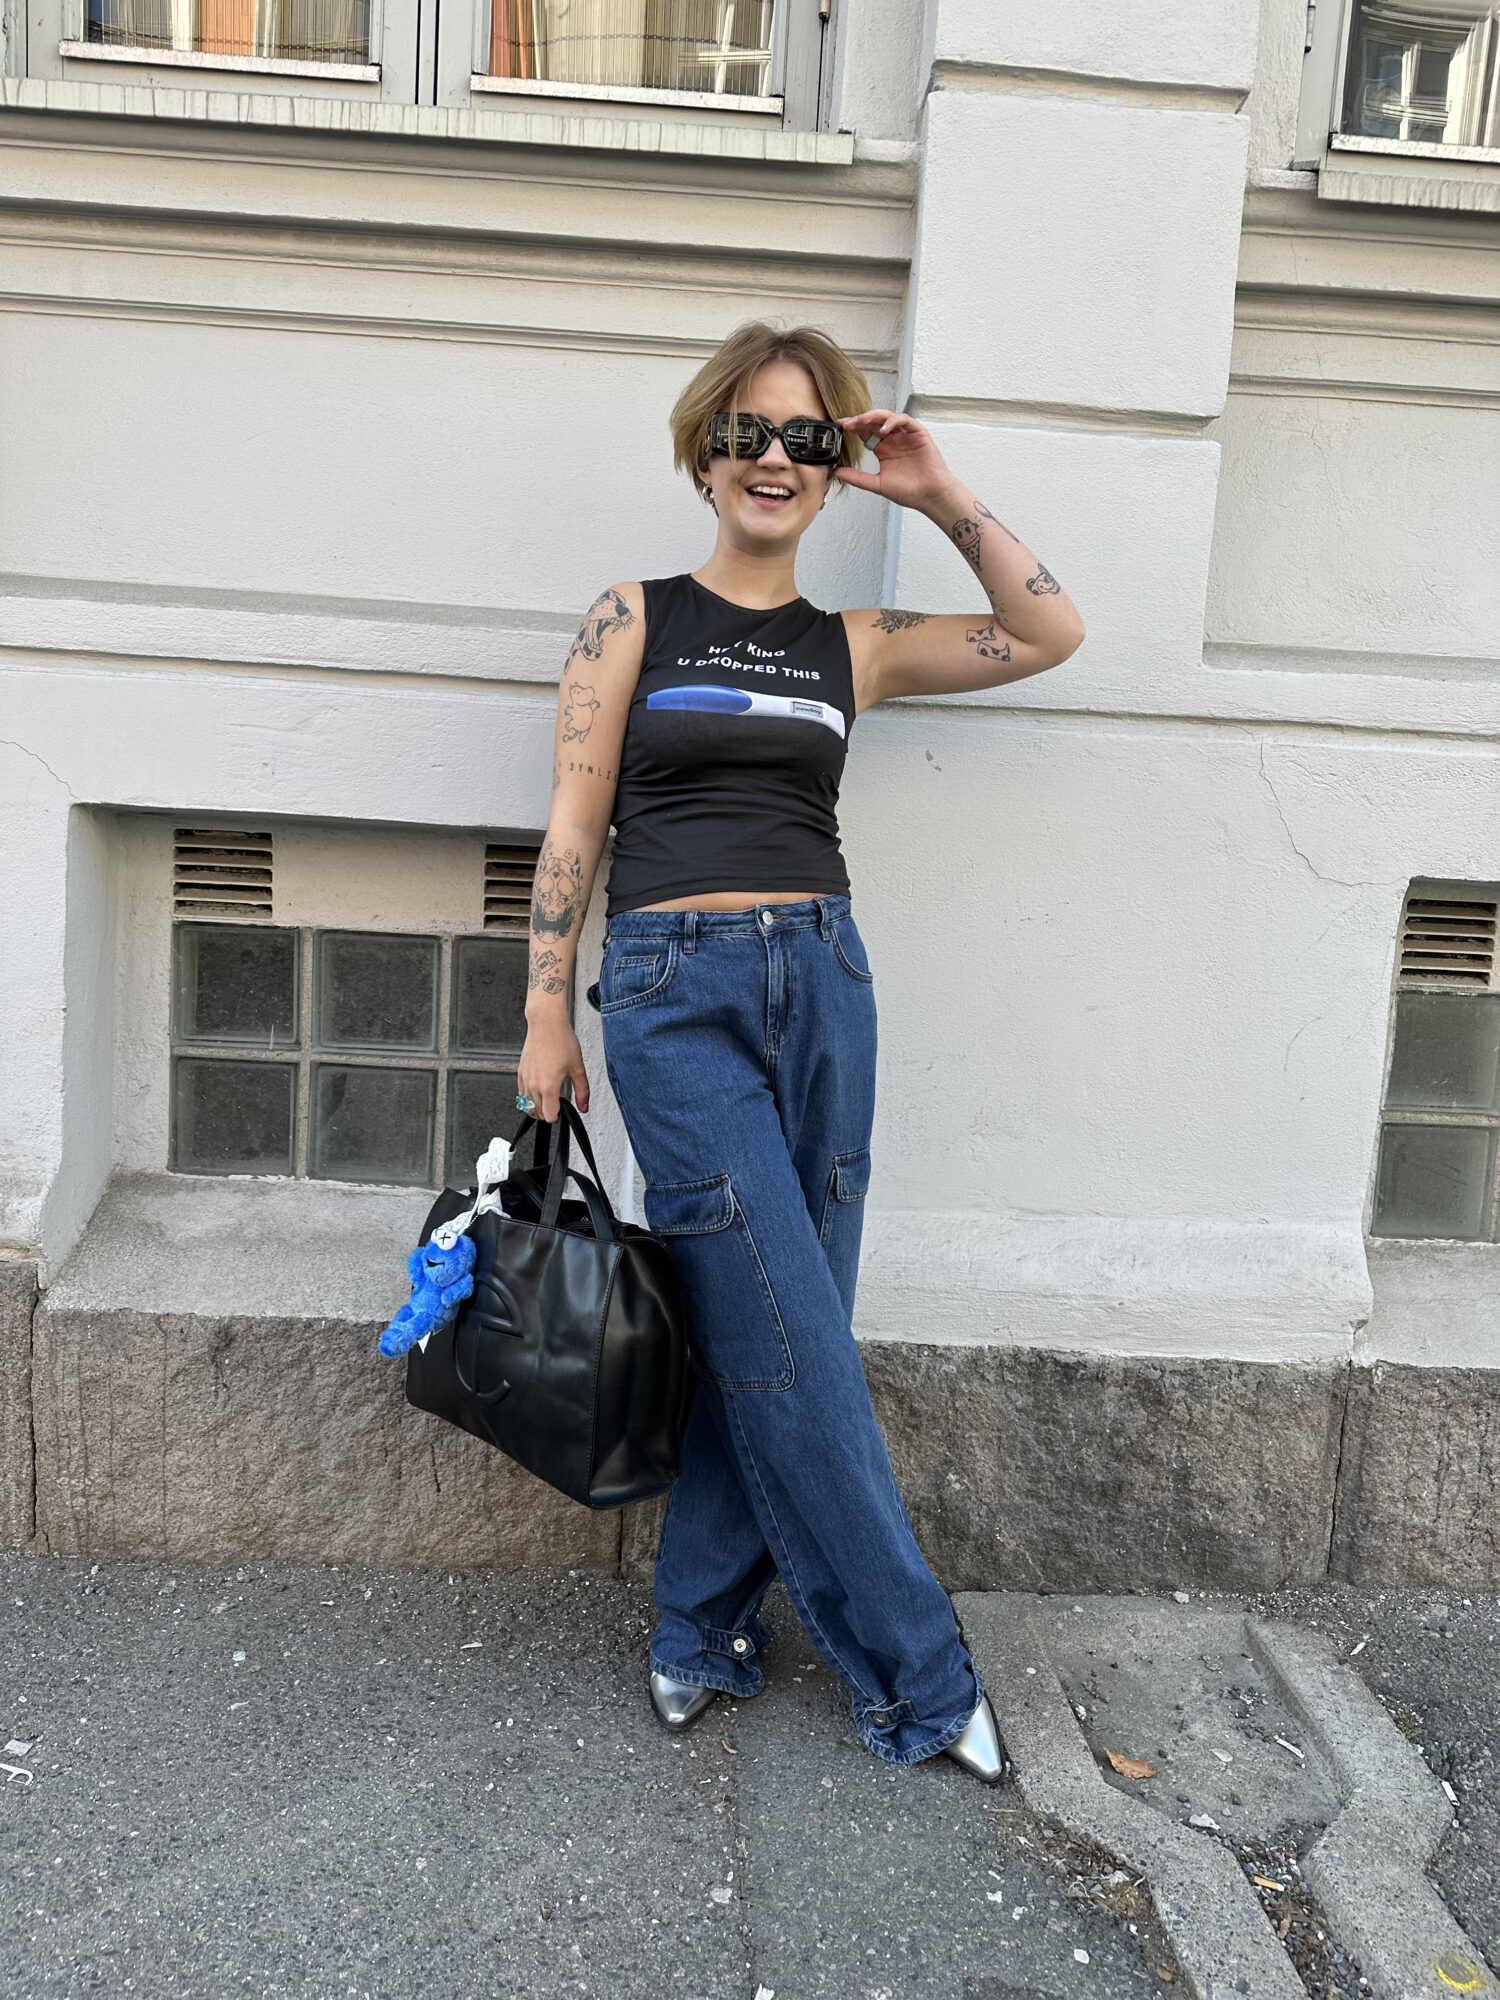 Ung kvinne poserer i jeans, singlet og solbriller.